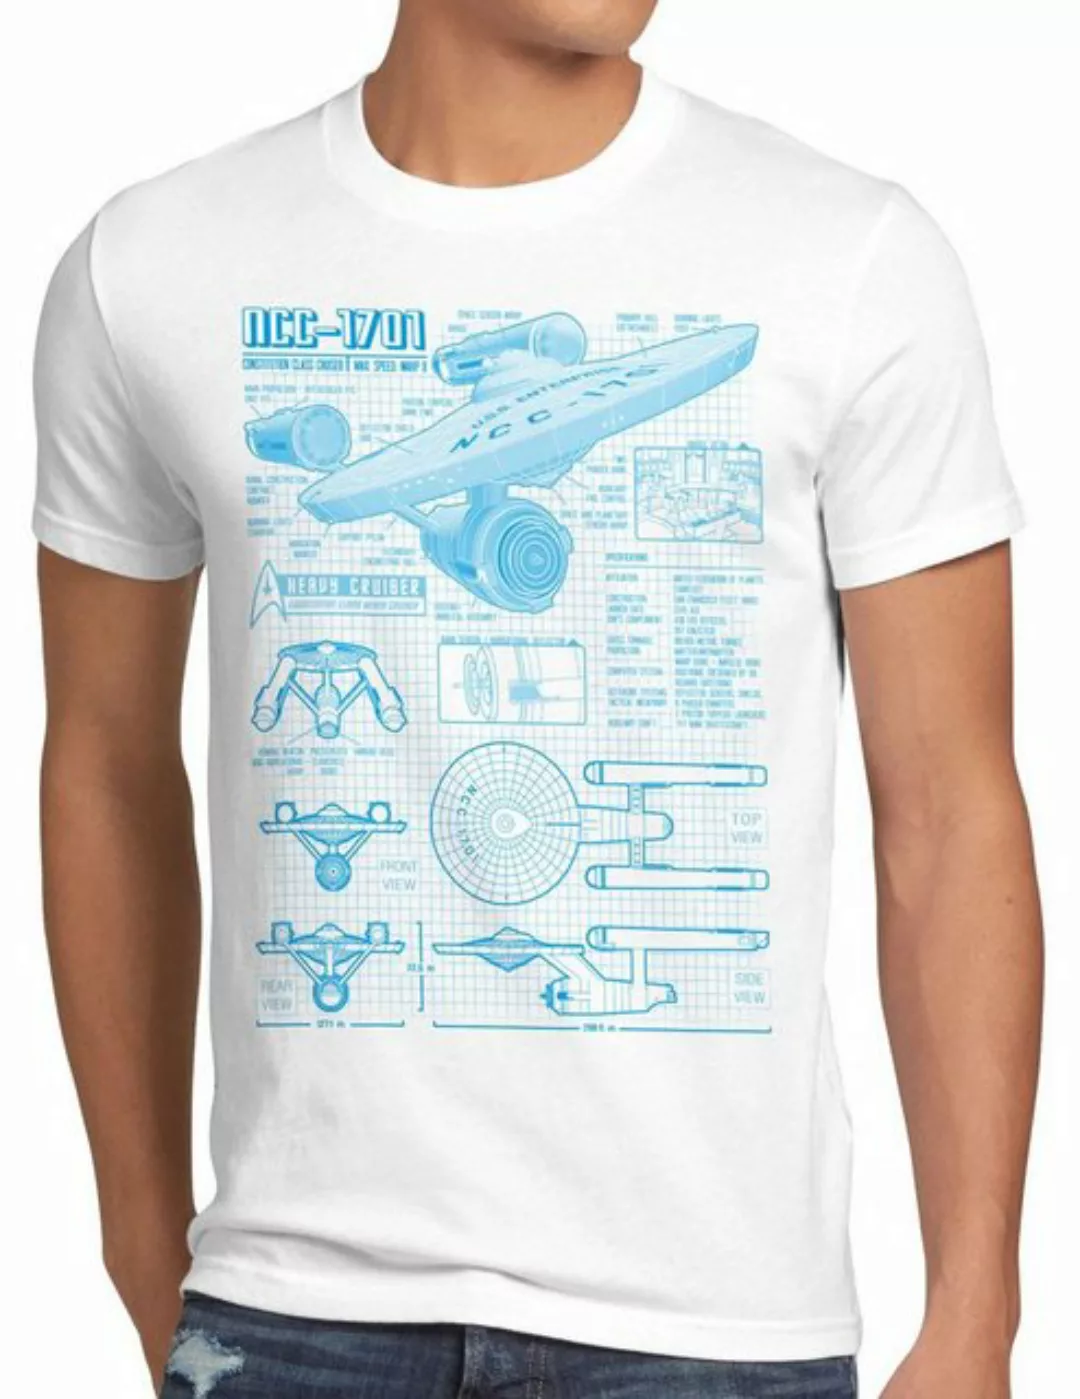 style3 Print-Shirt Herren T-Shirt NCC-1701 christopher pike trek trekkie st günstig online kaufen